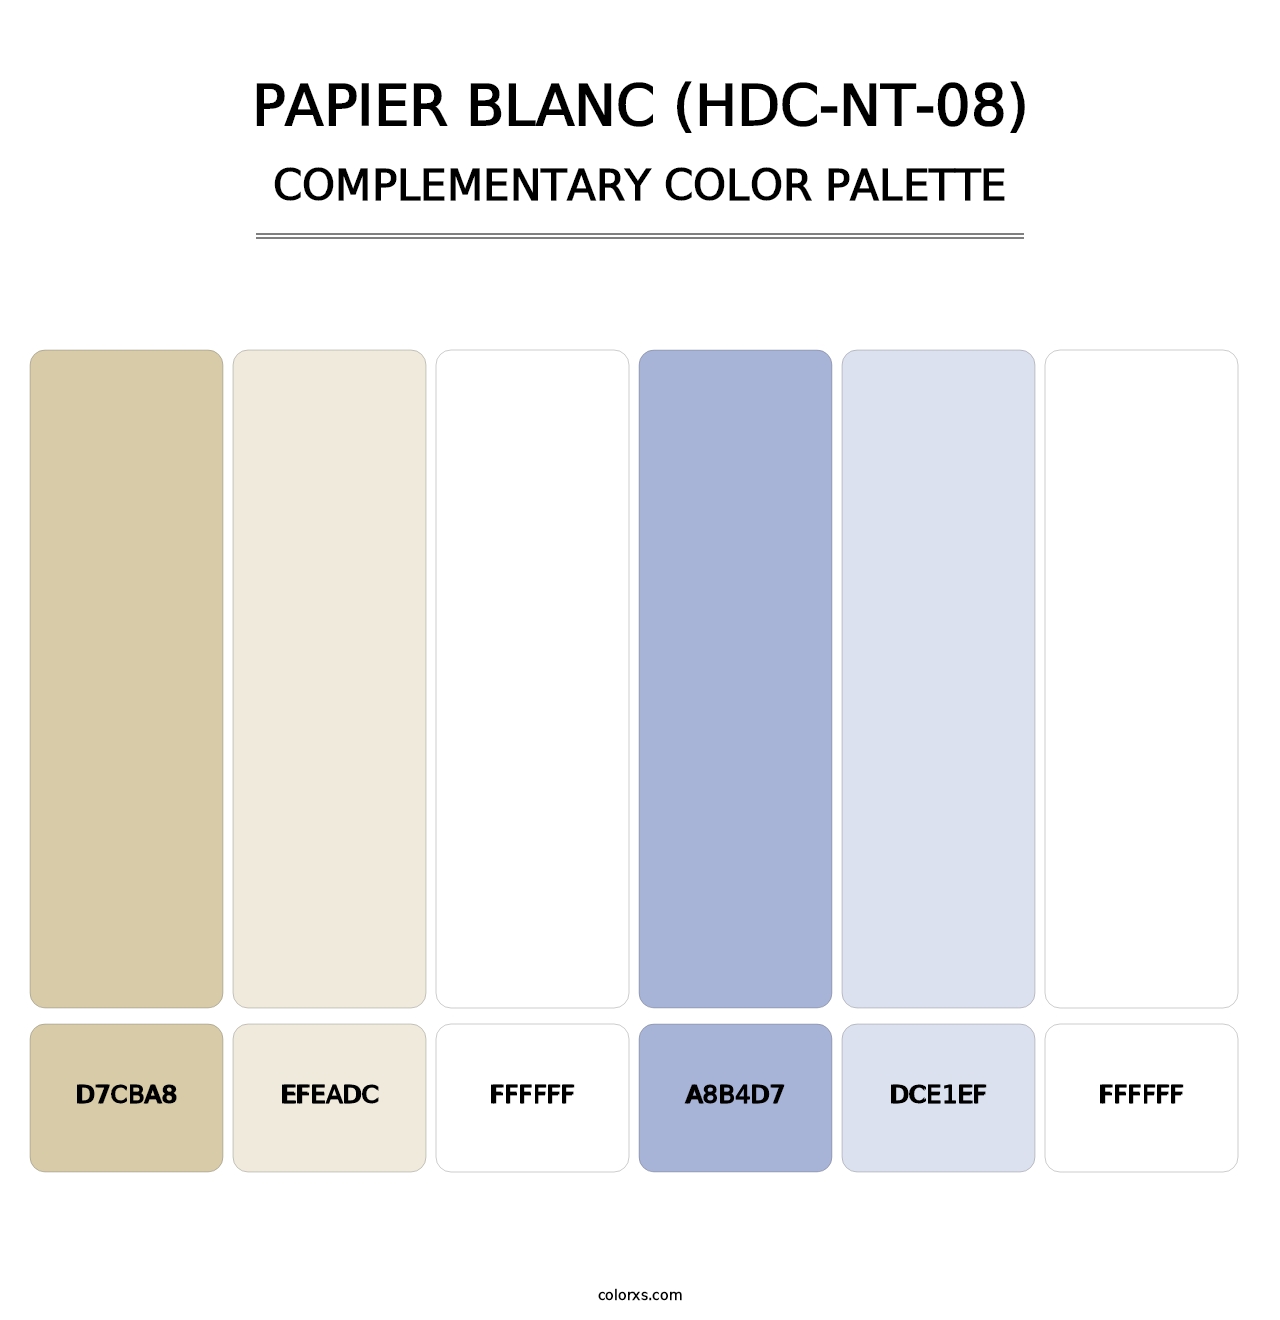 Papier Blanc (HDC-NT-08) - Complementary Color Palette